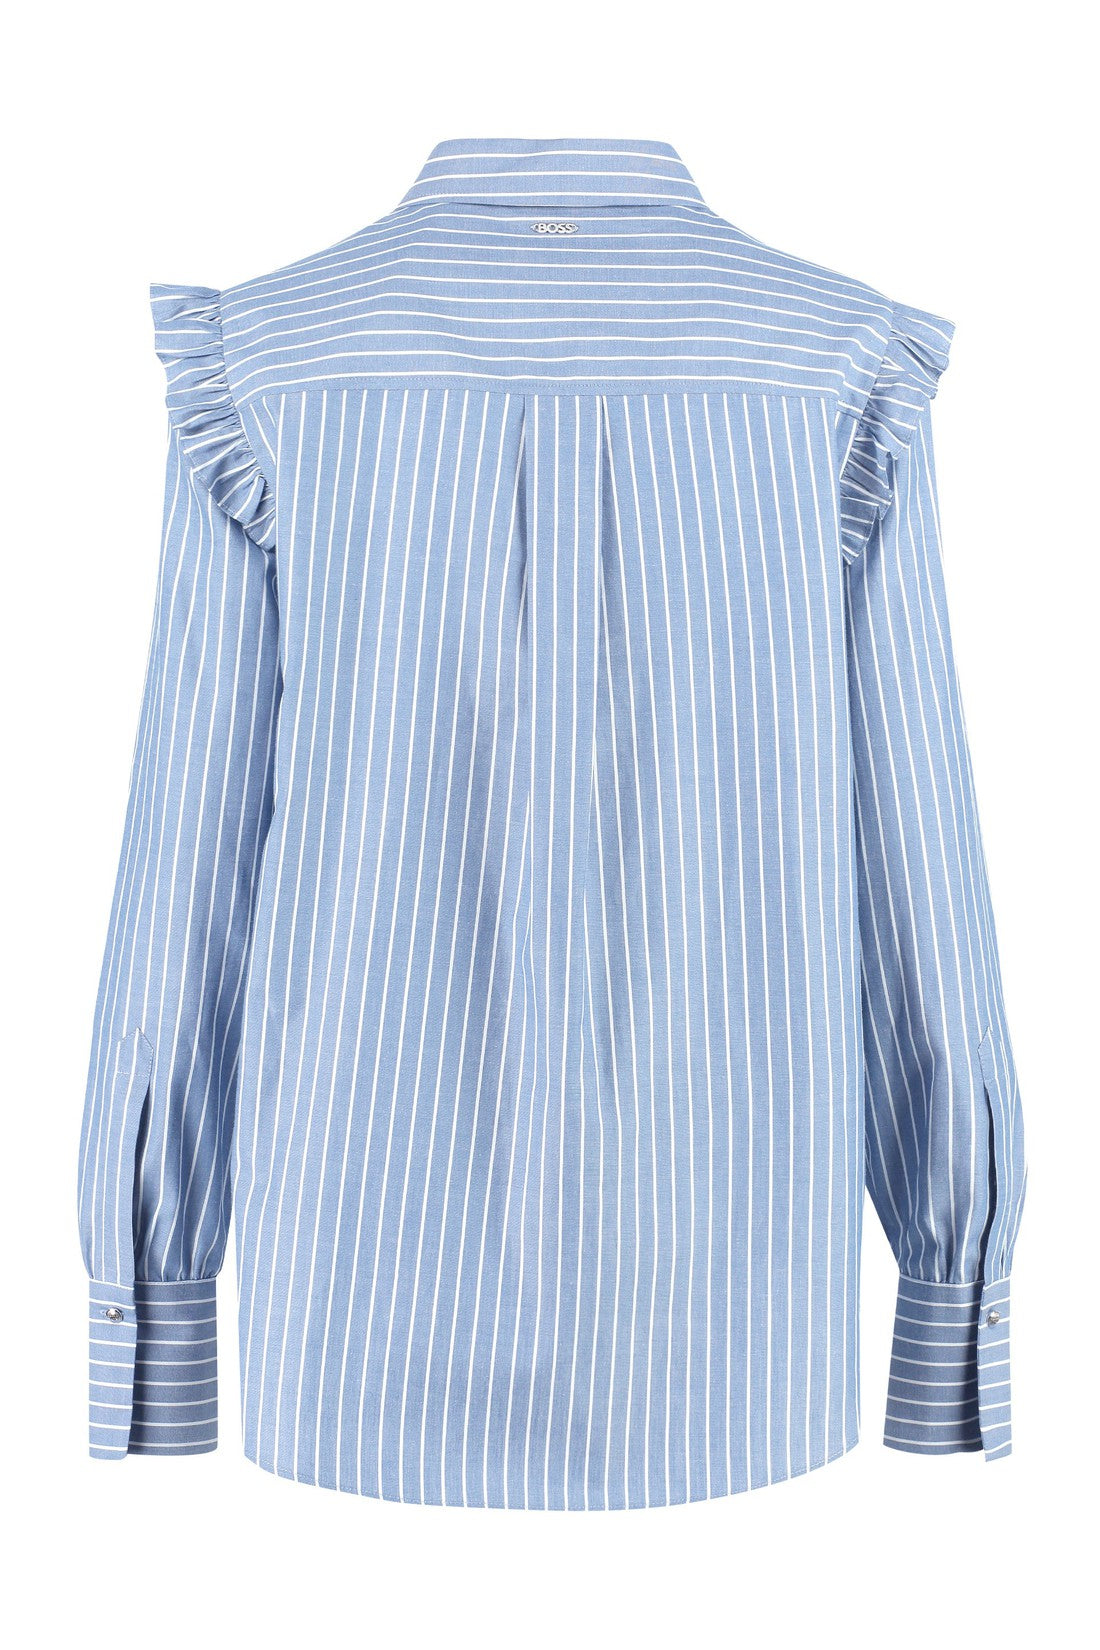 BOSS-OUTLET-SALE-Striped cotton shirt-ARCHIVIST